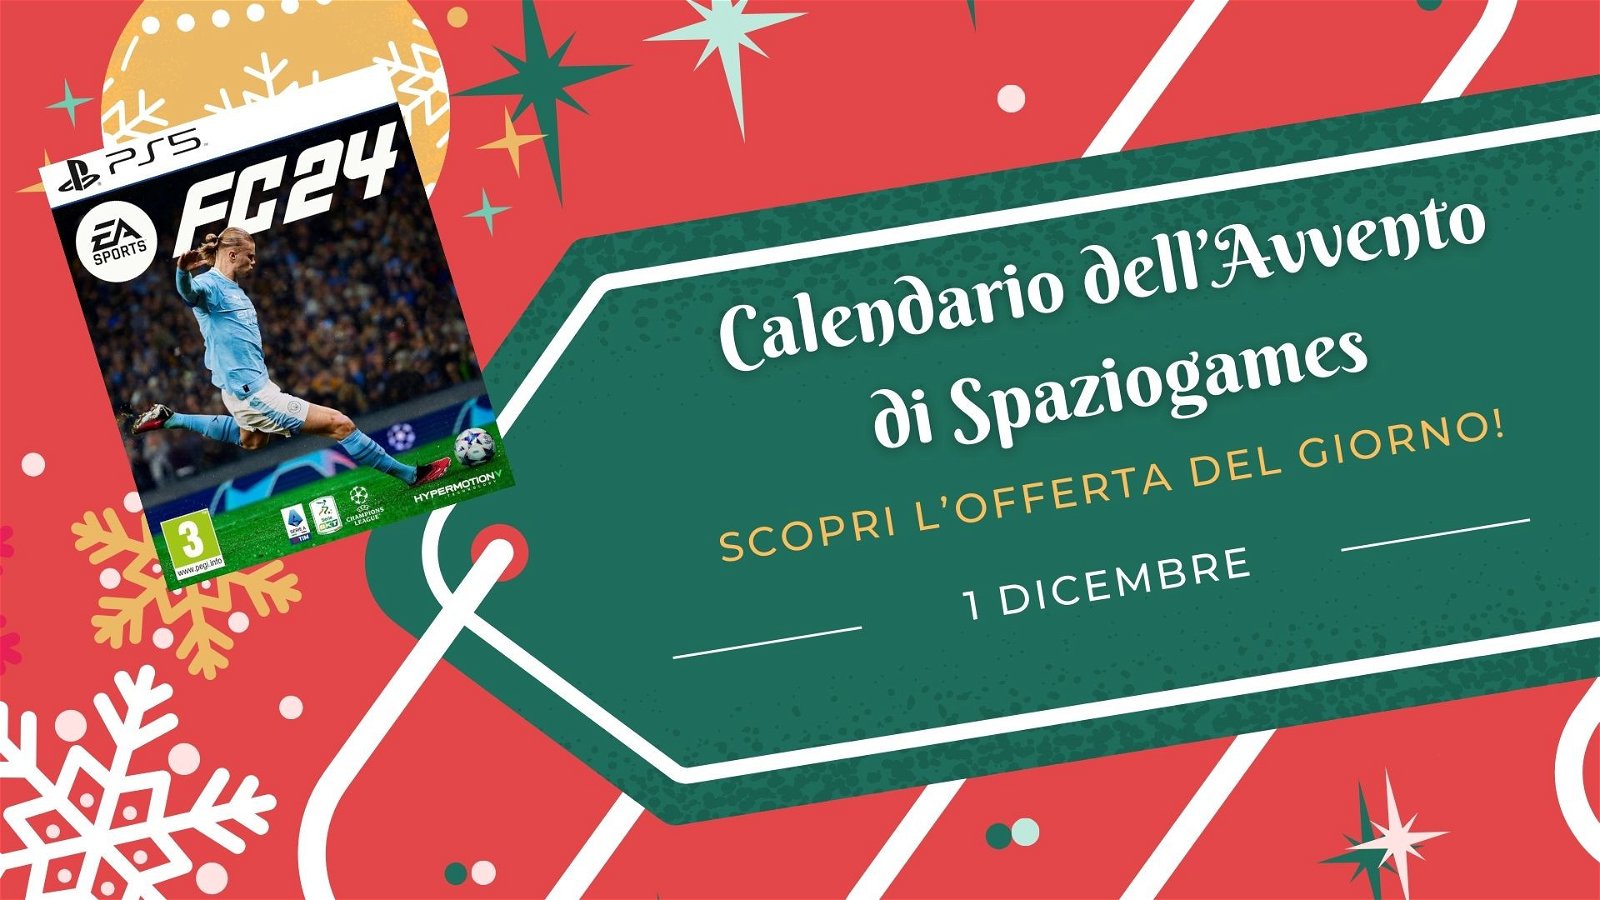 Calendario dell'avvento di Spaziogames: scopri l'offerta dell'1 dicembre